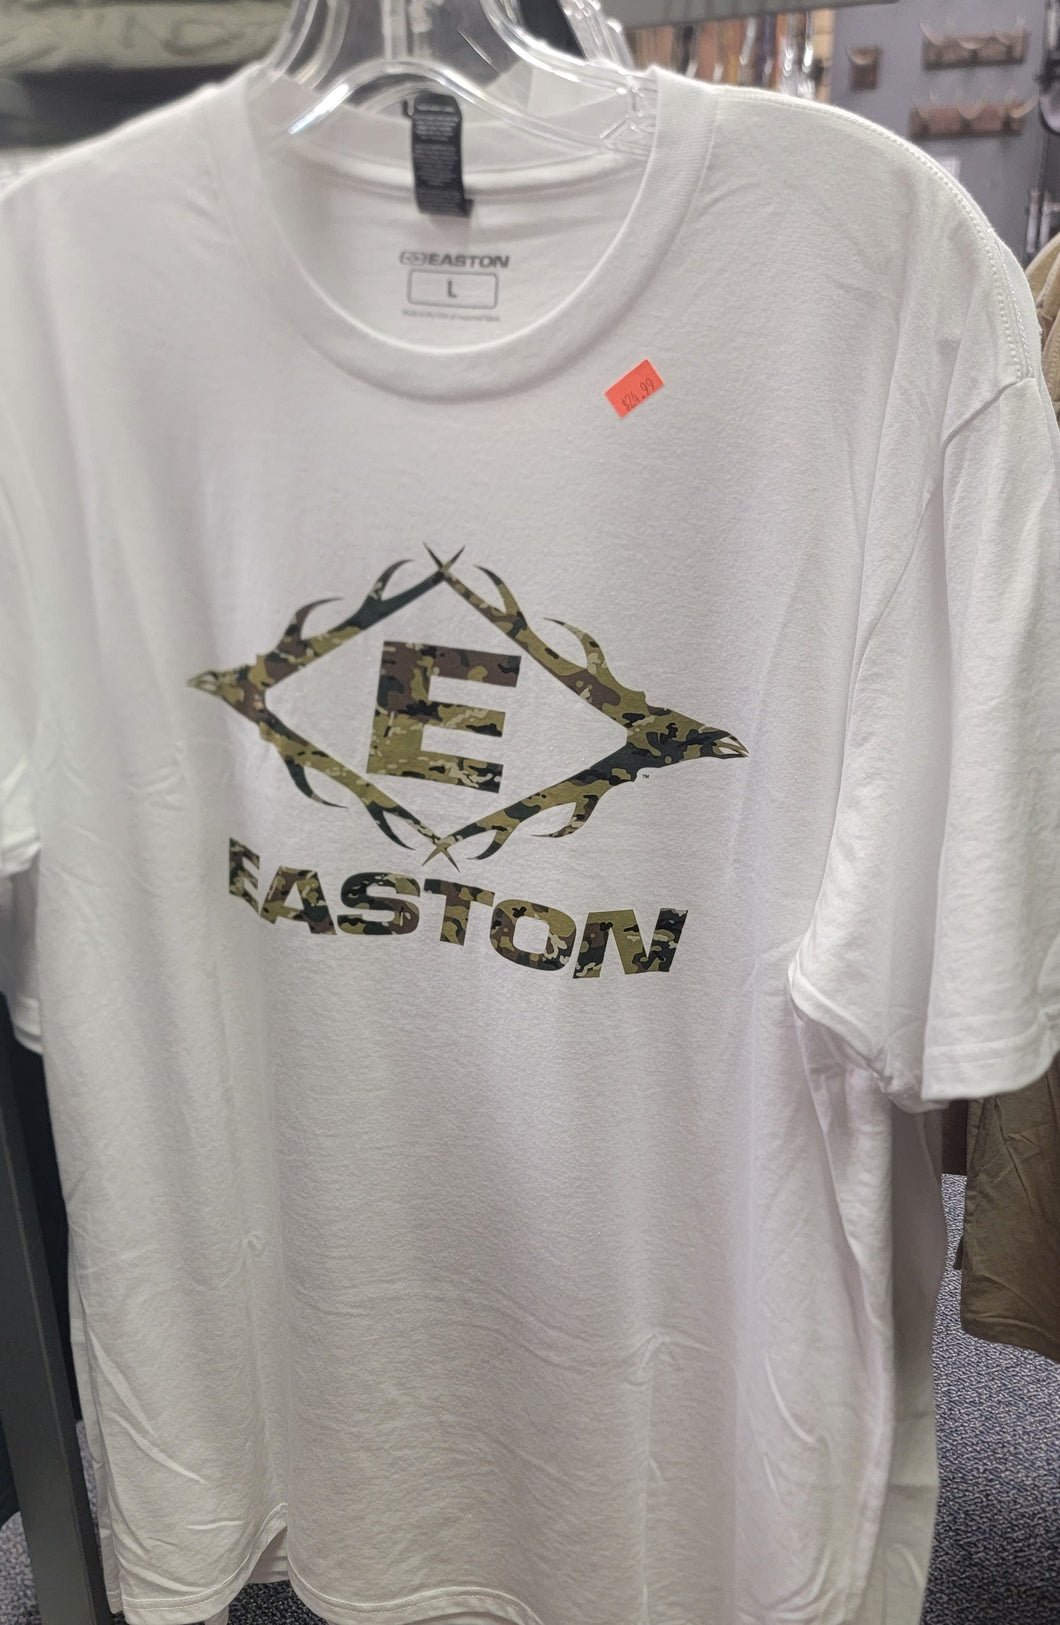 EASTON ANTLER E LOGO T-SHIRT White with Camo logo